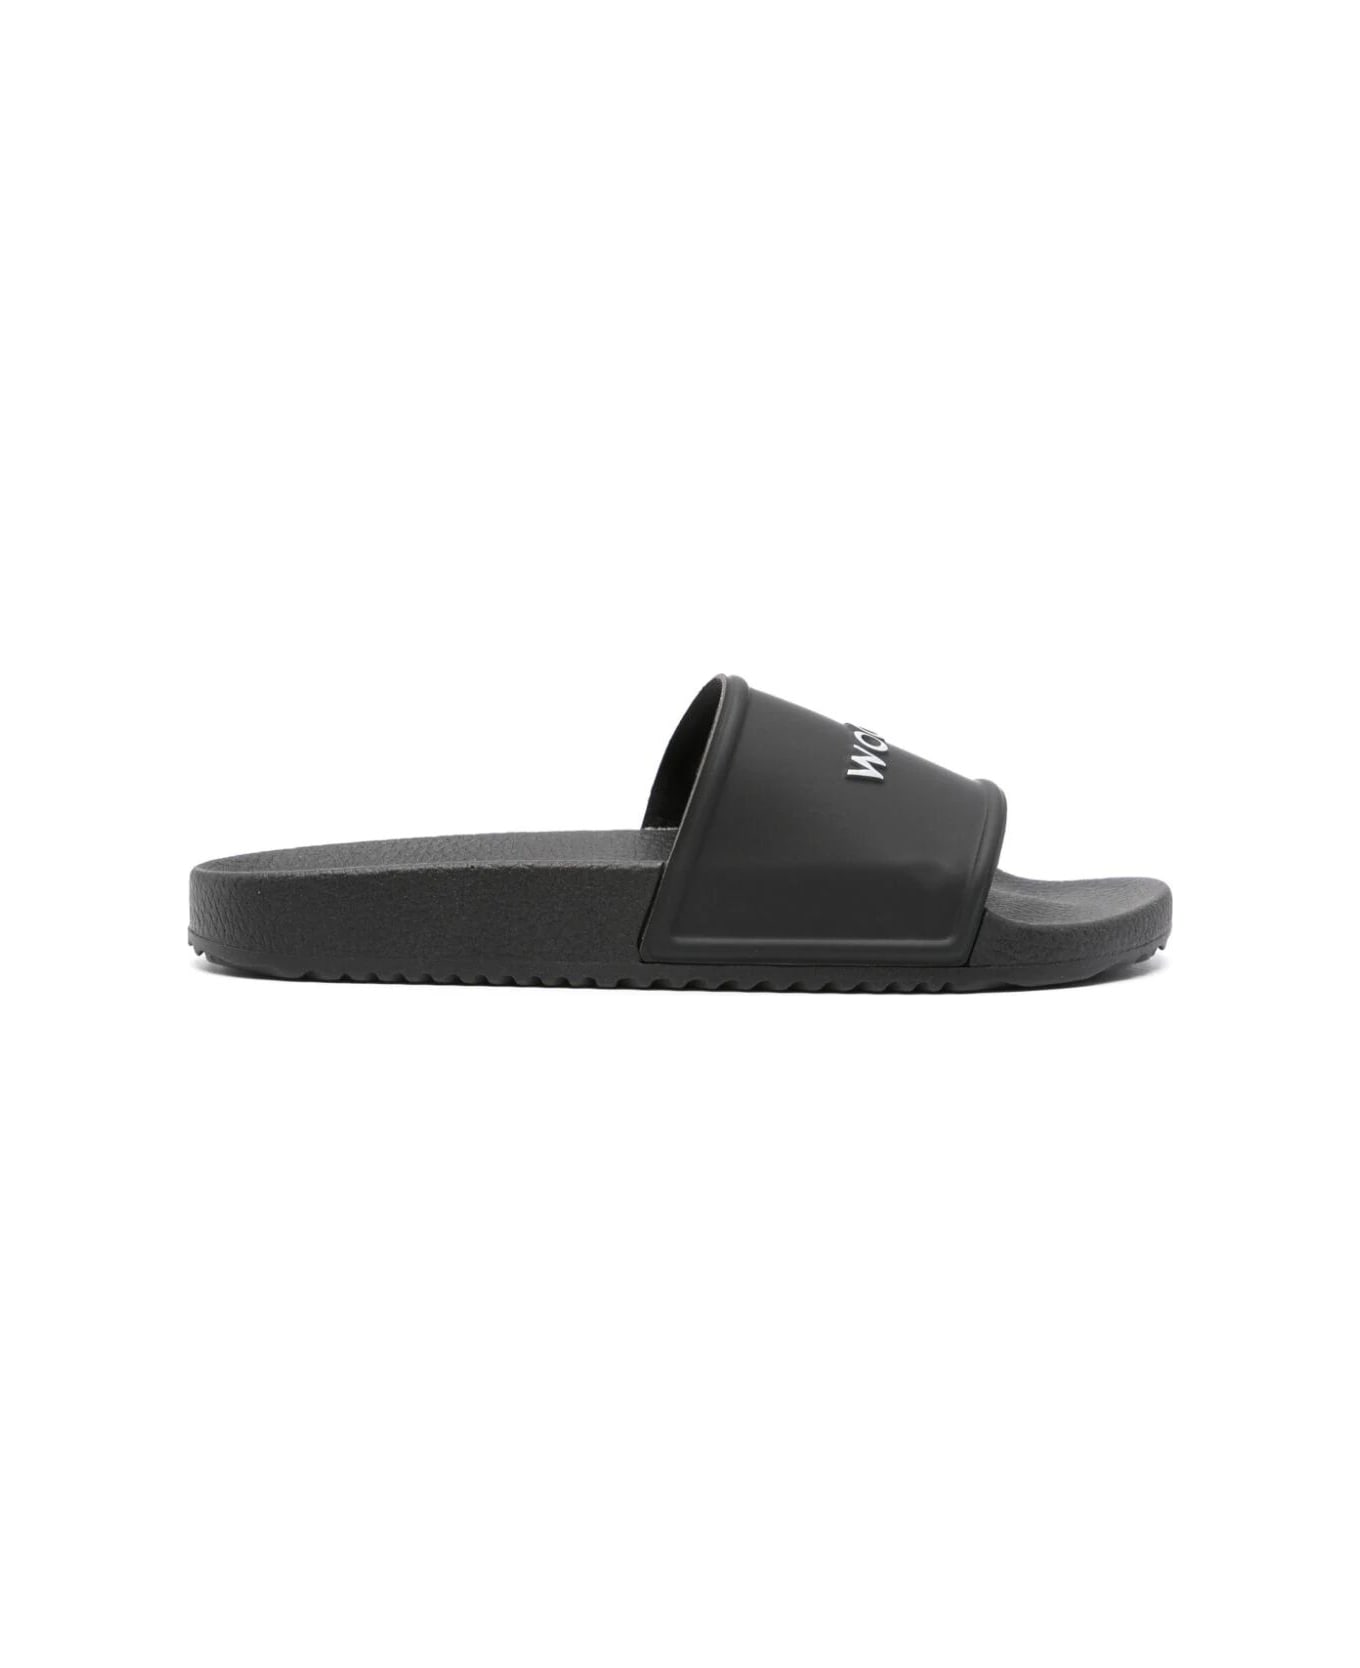 Woolrich Sandals - Black